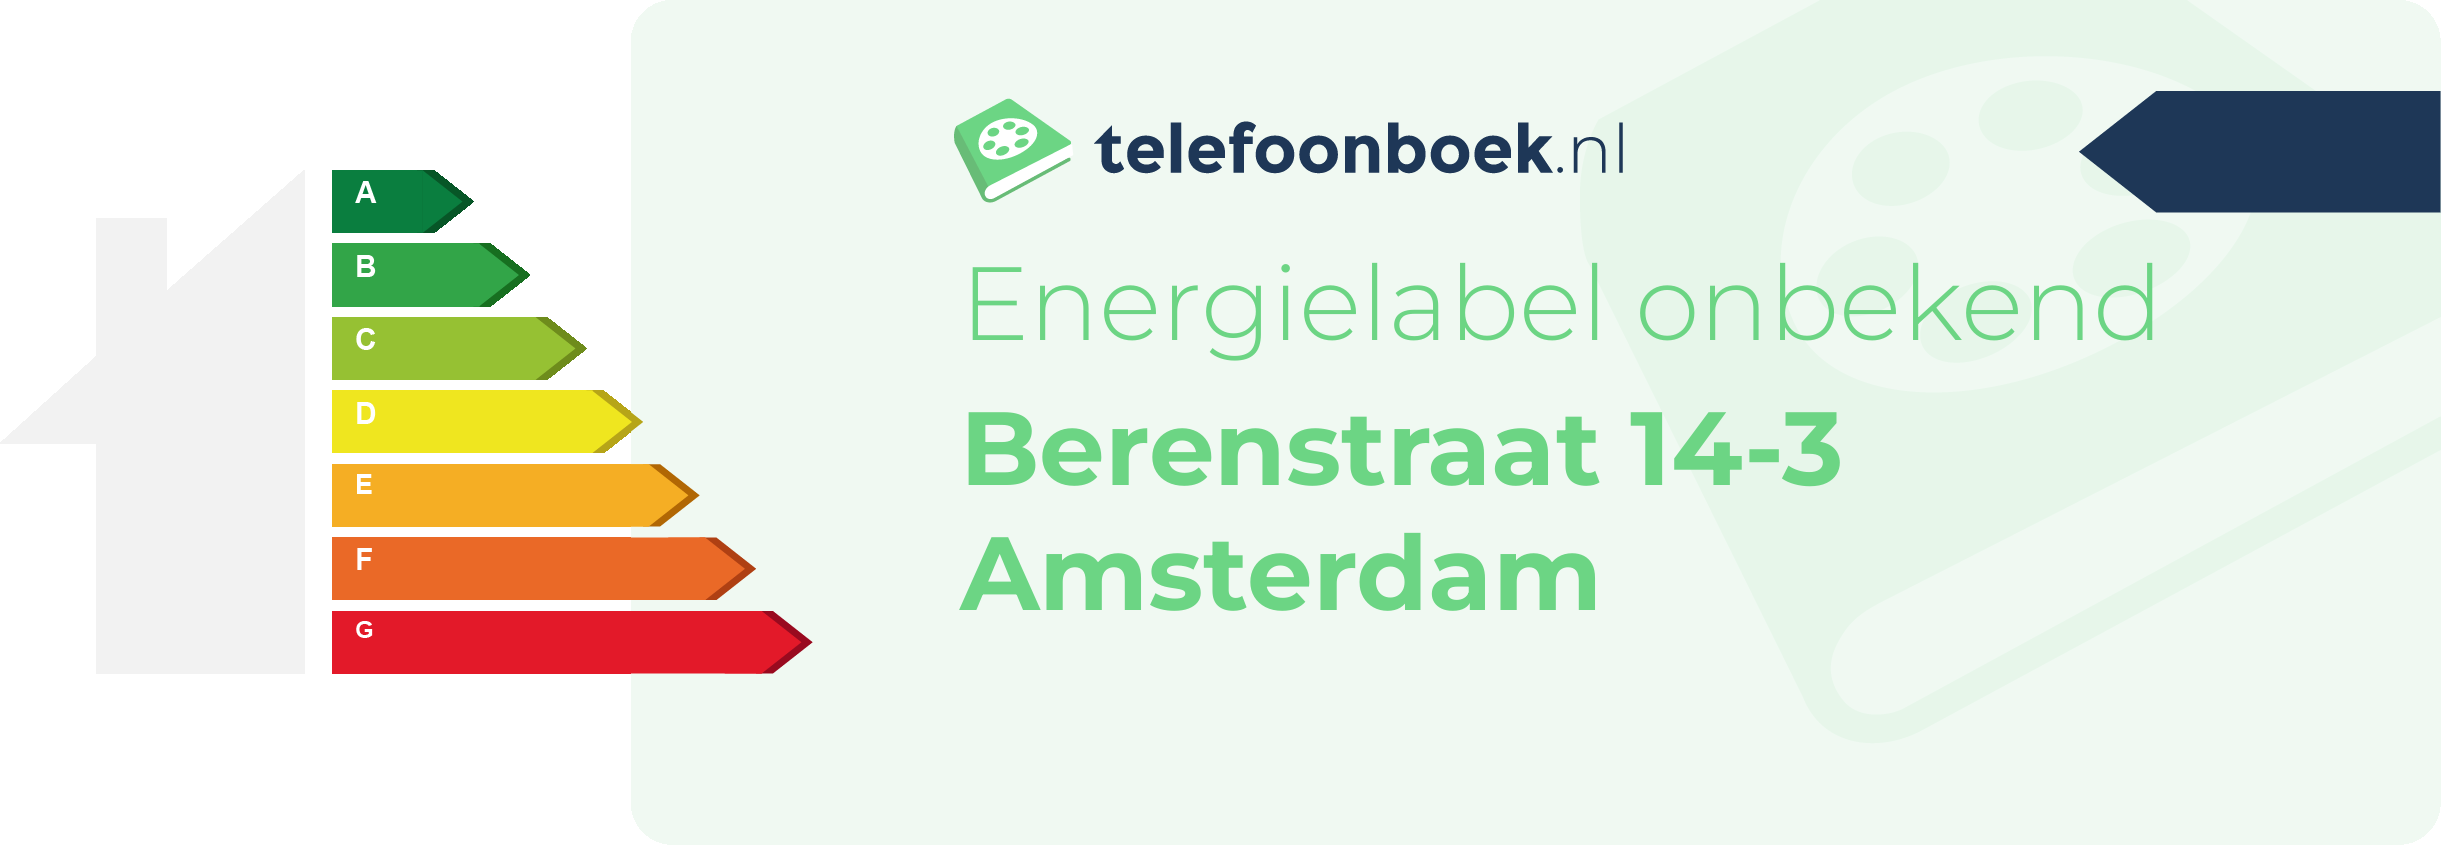 Energielabel Berenstraat 14-3 Amsterdam